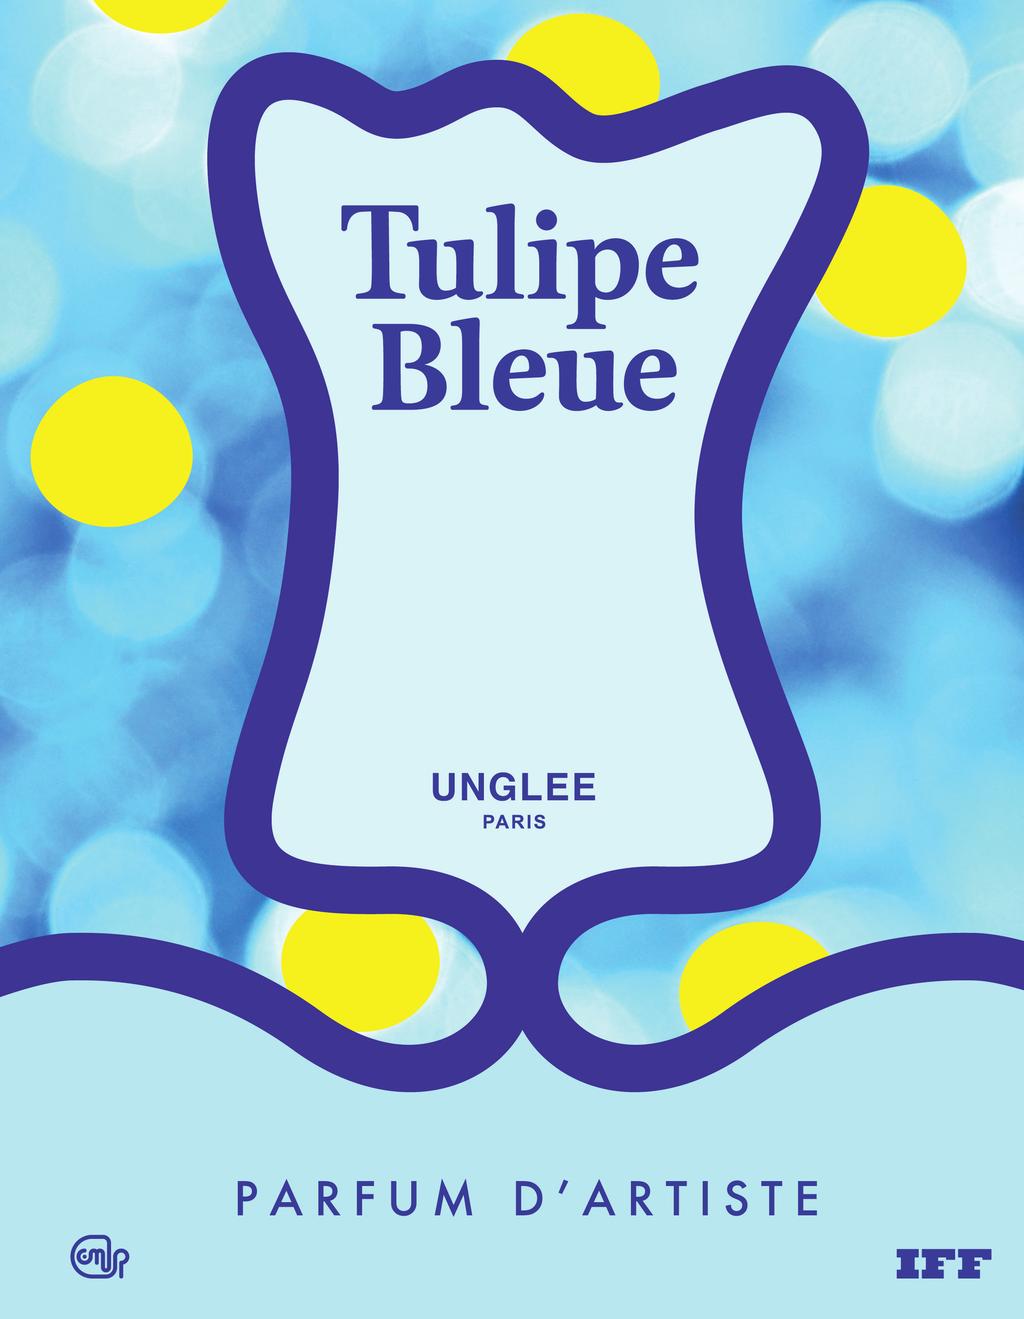 invites Galerie Christophe Gaillard to present Tulipe Bleue Immaterial